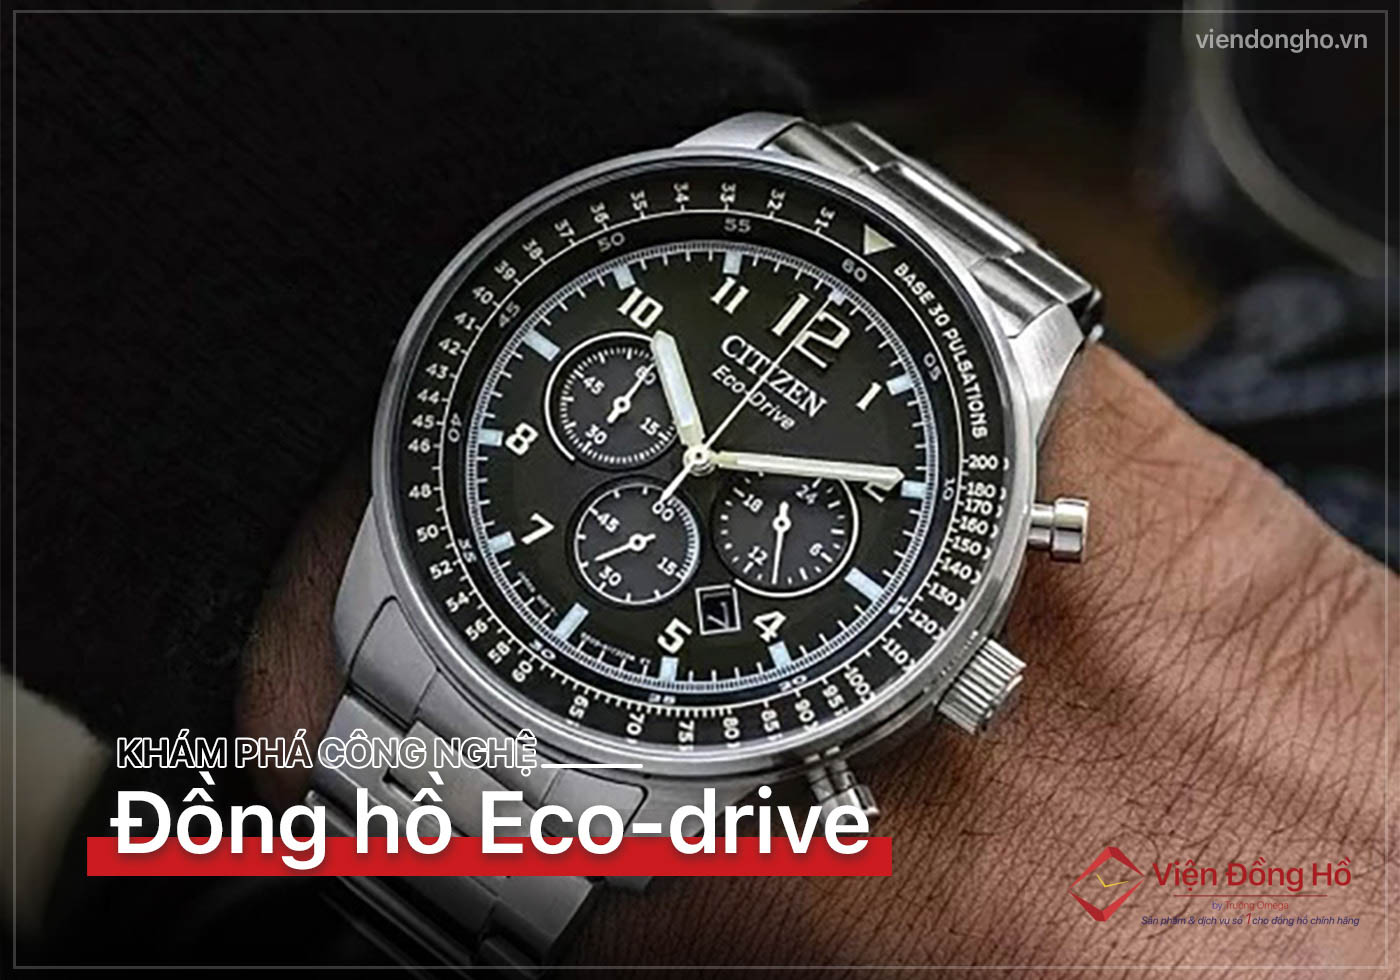 Kham pha cong nghe dac biet cua dong ho Eco-drive 7